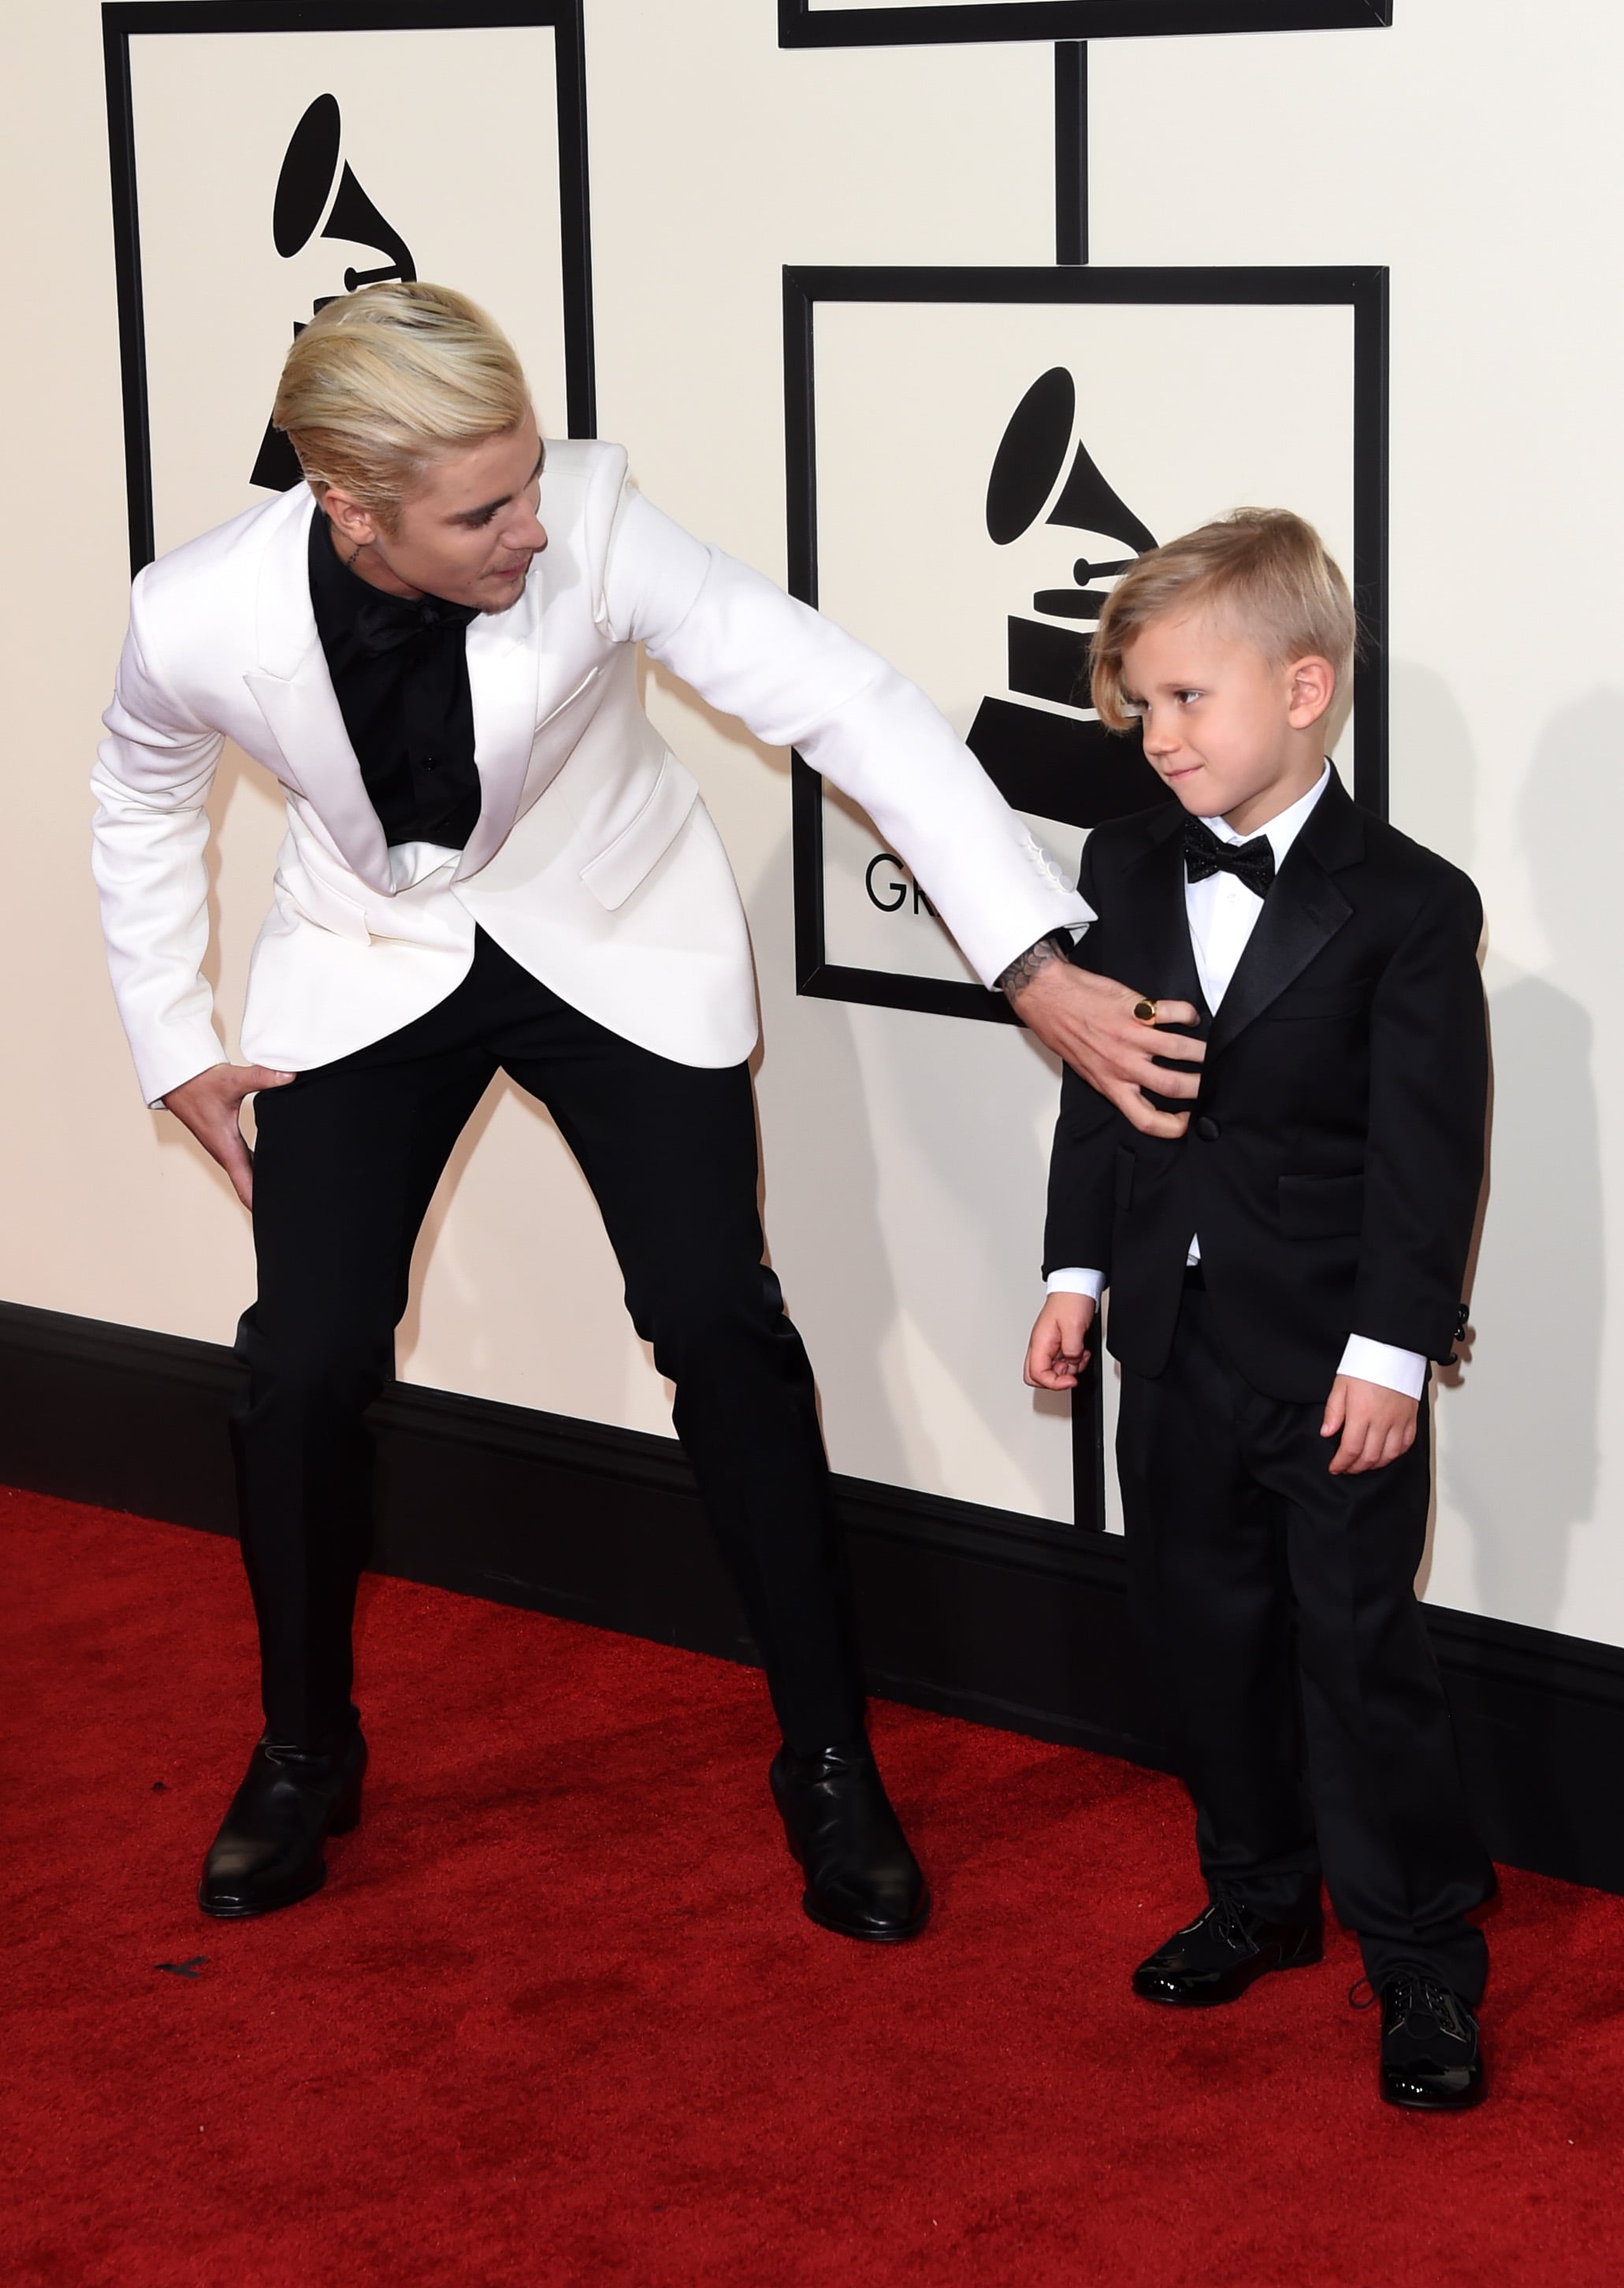 Justin Bieber Wins First Grammy, Brings Little Brother to Show!: Photo  3579486, 2016 Grammys, Grammys, Jaxon Bieber, Justin Bieber Photos